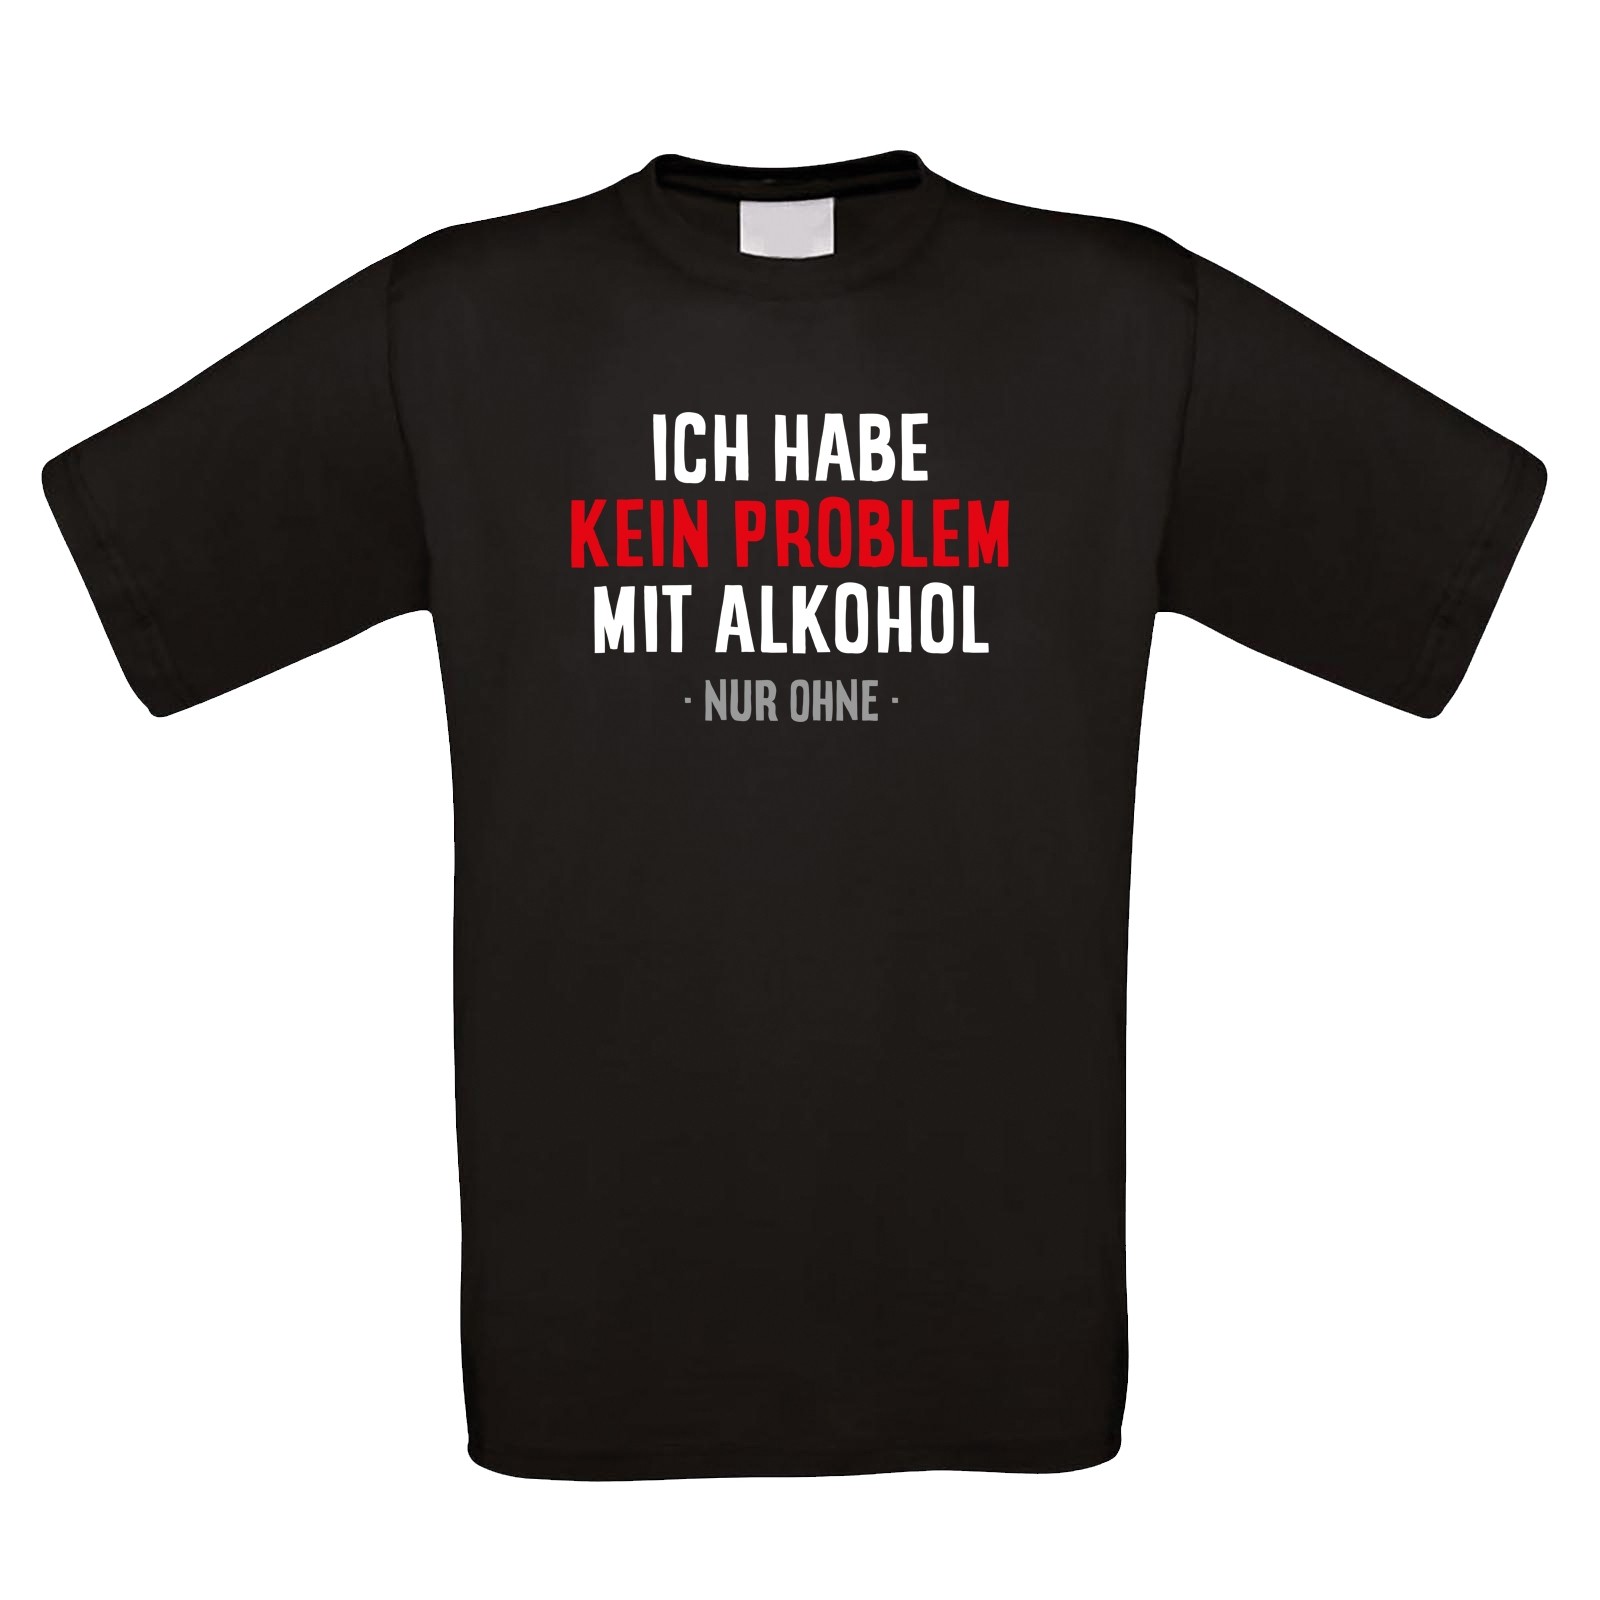 Funshirt weiß oder schwarz, als Tanktop oder Shirt - Ich habe kein Problem mit Alkohol - nur ohne